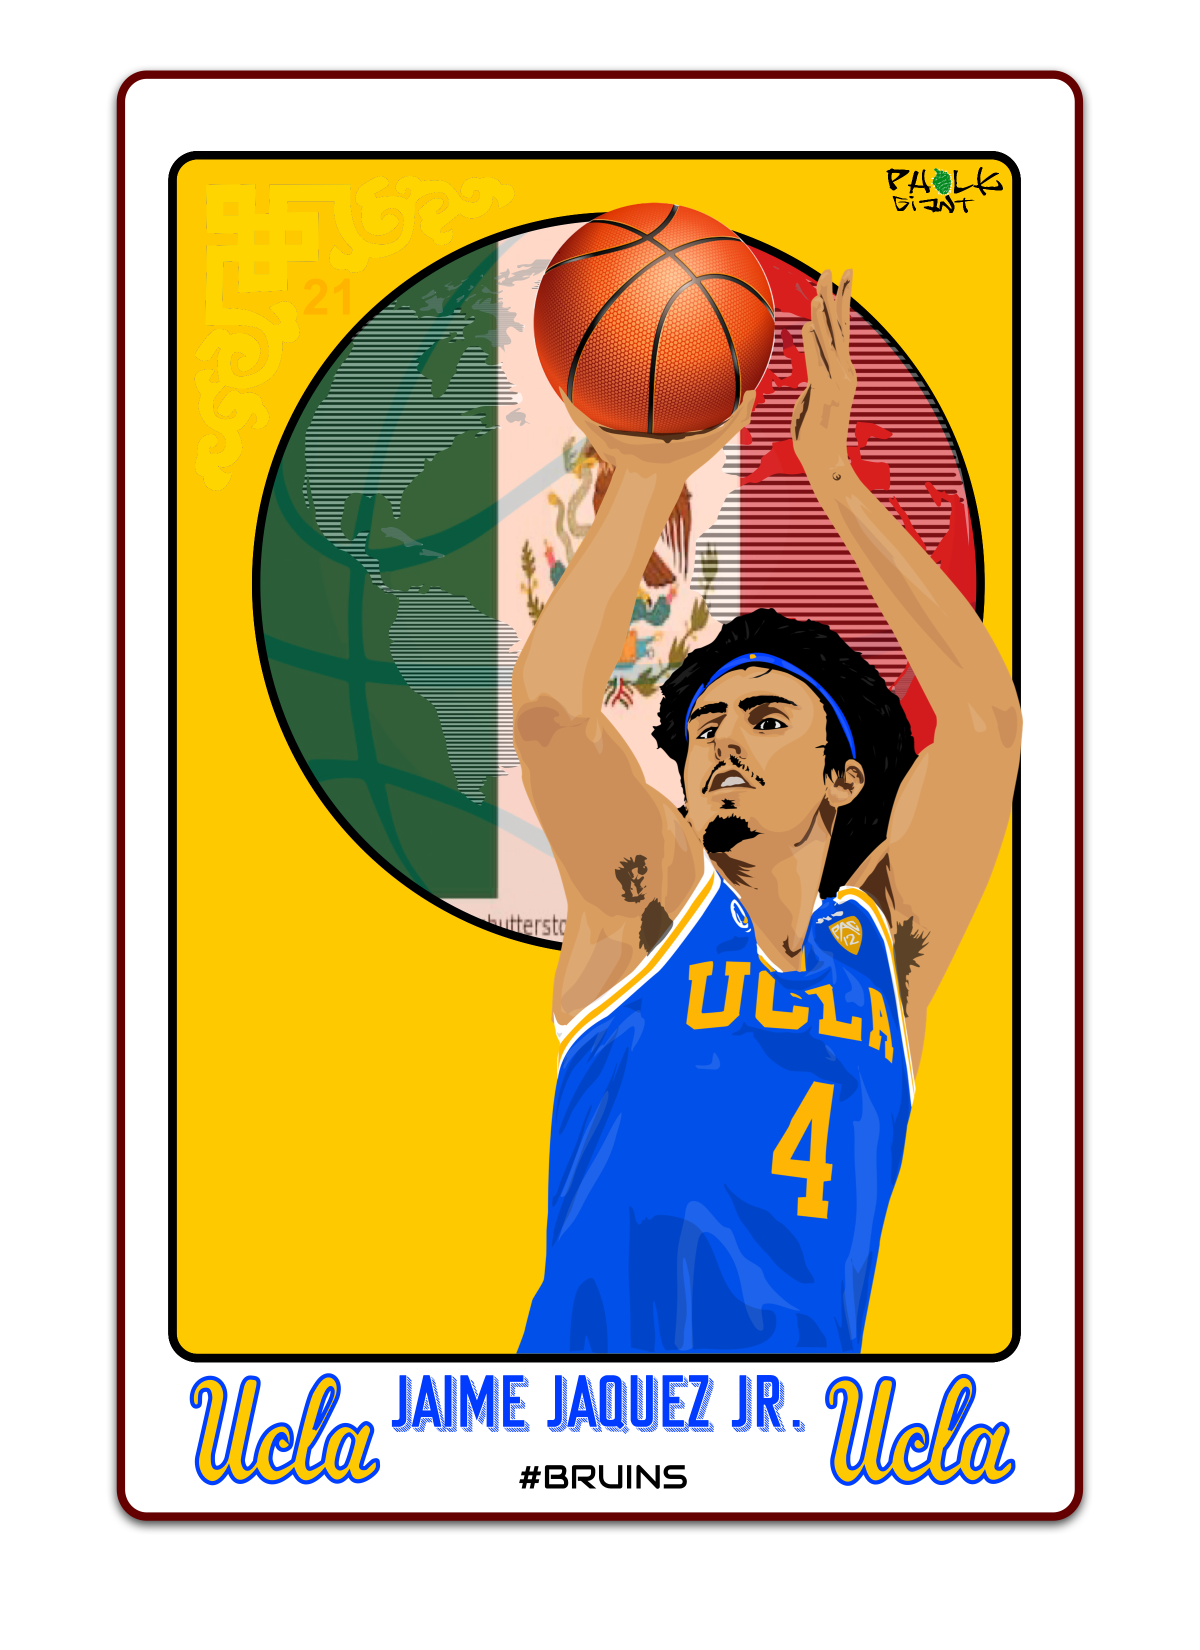 A Jaime Jaquez trading card